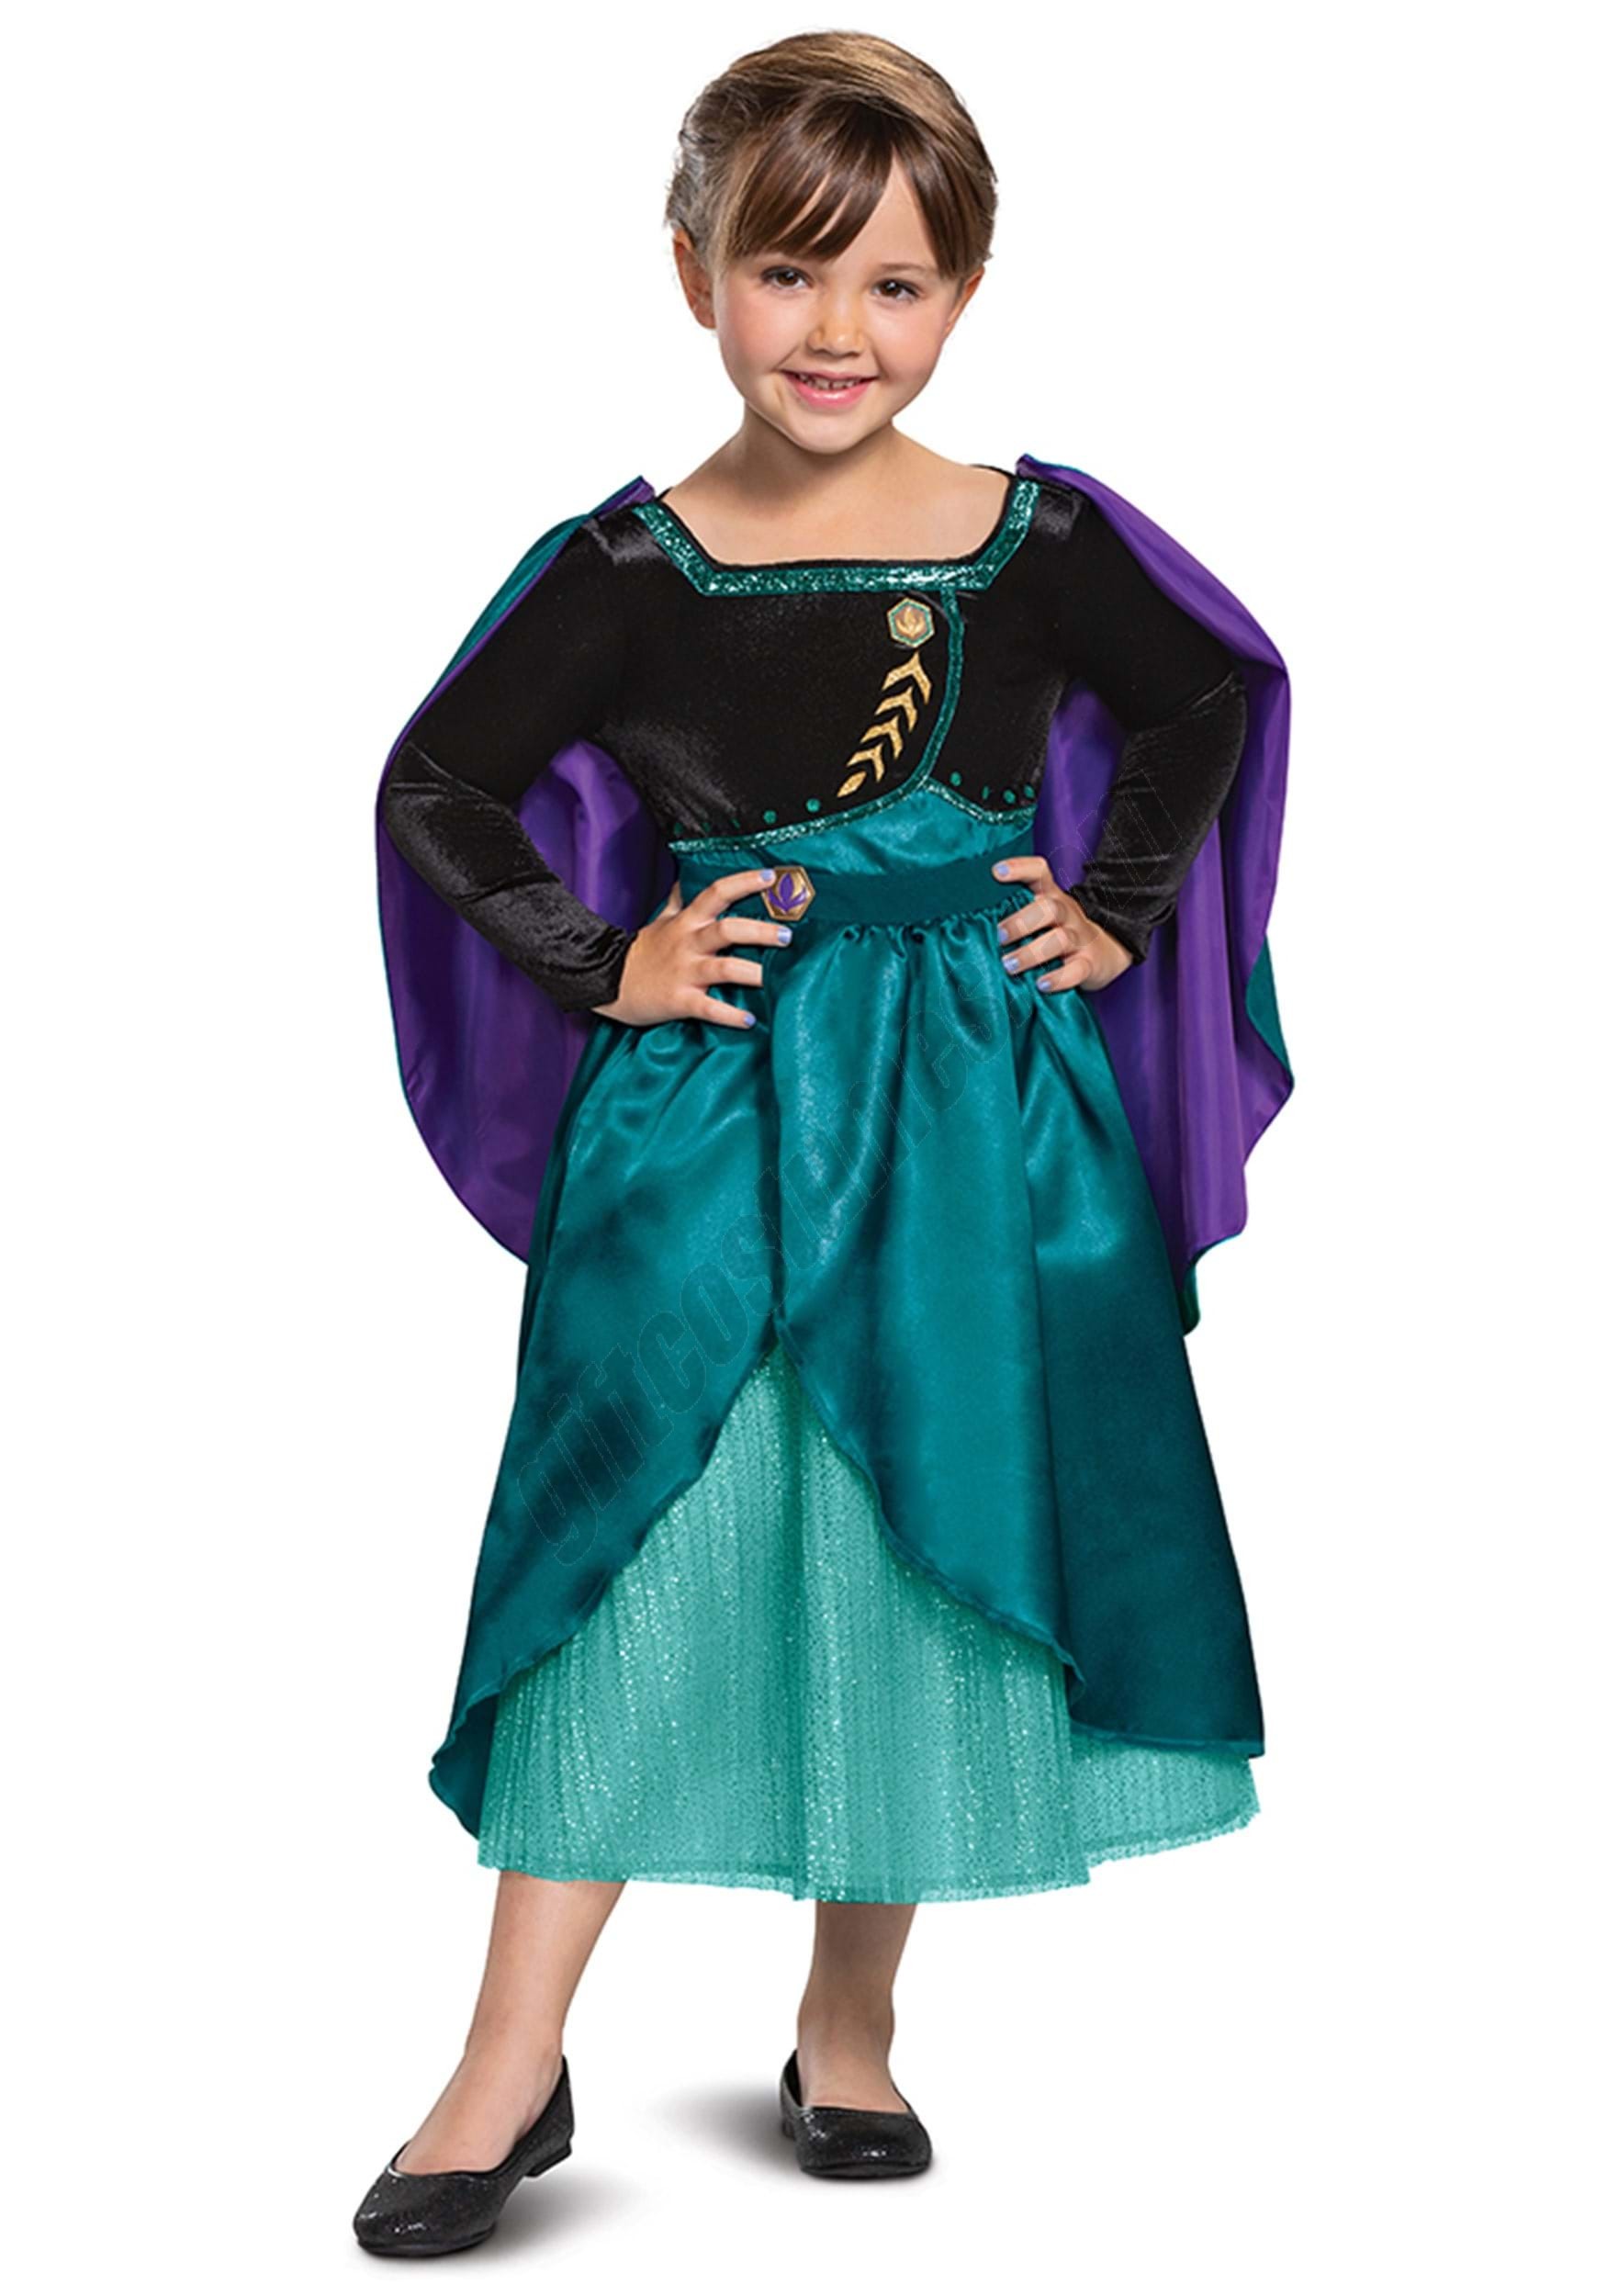 Frozen Queen Anna Deluxe Girls Costume Promotions - Frozen Queen Anna Deluxe Girls Costume Promotions